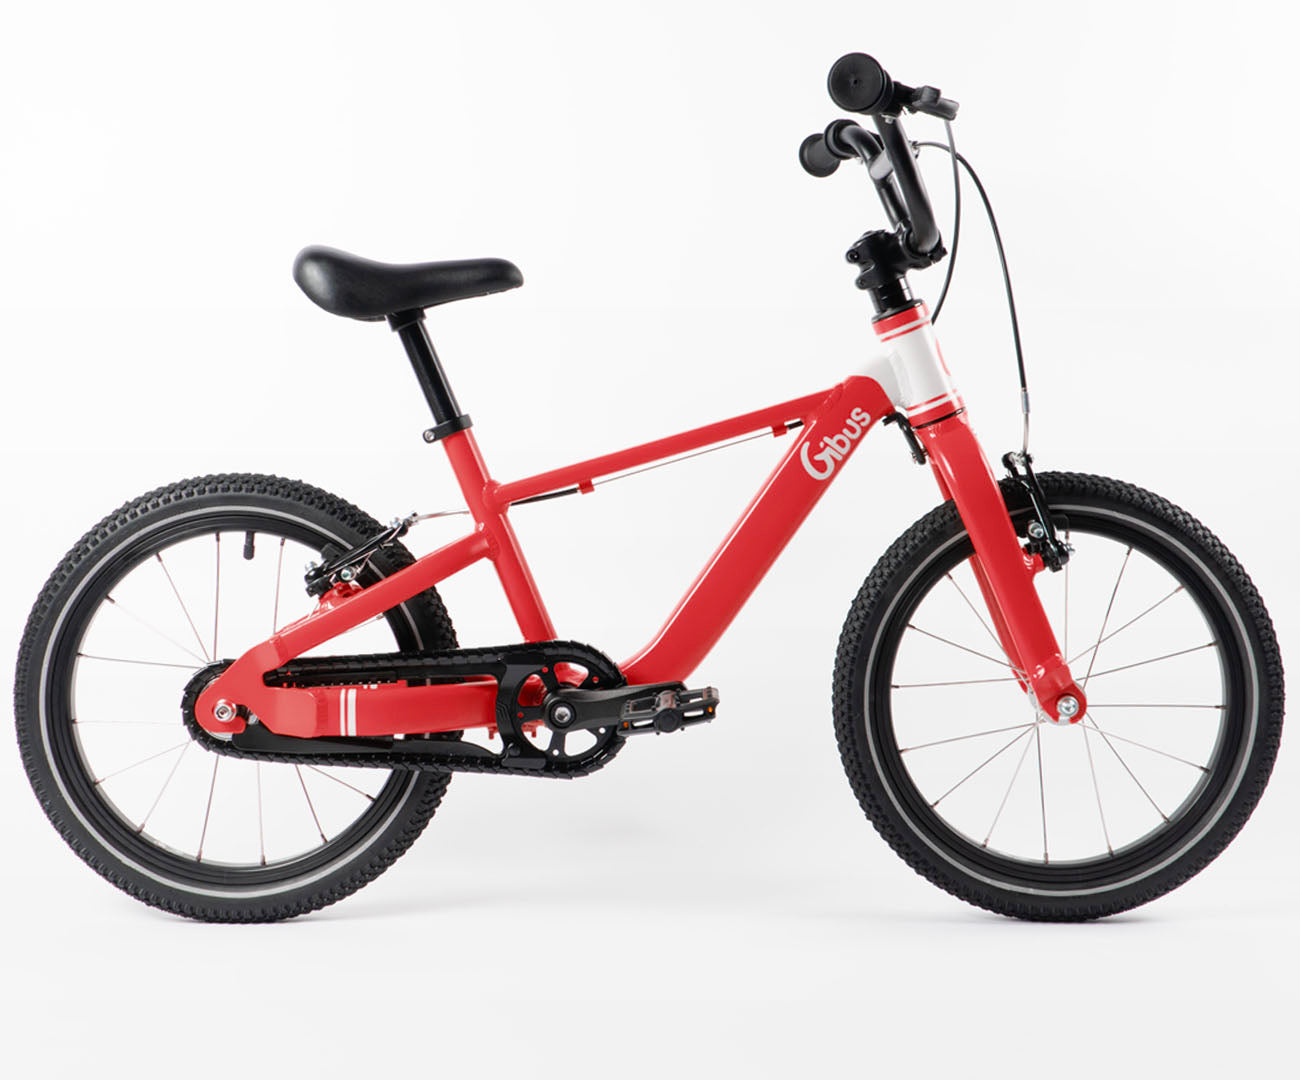 Vélo enfant 5 ans : comment choisir ? – Gibus Cycles